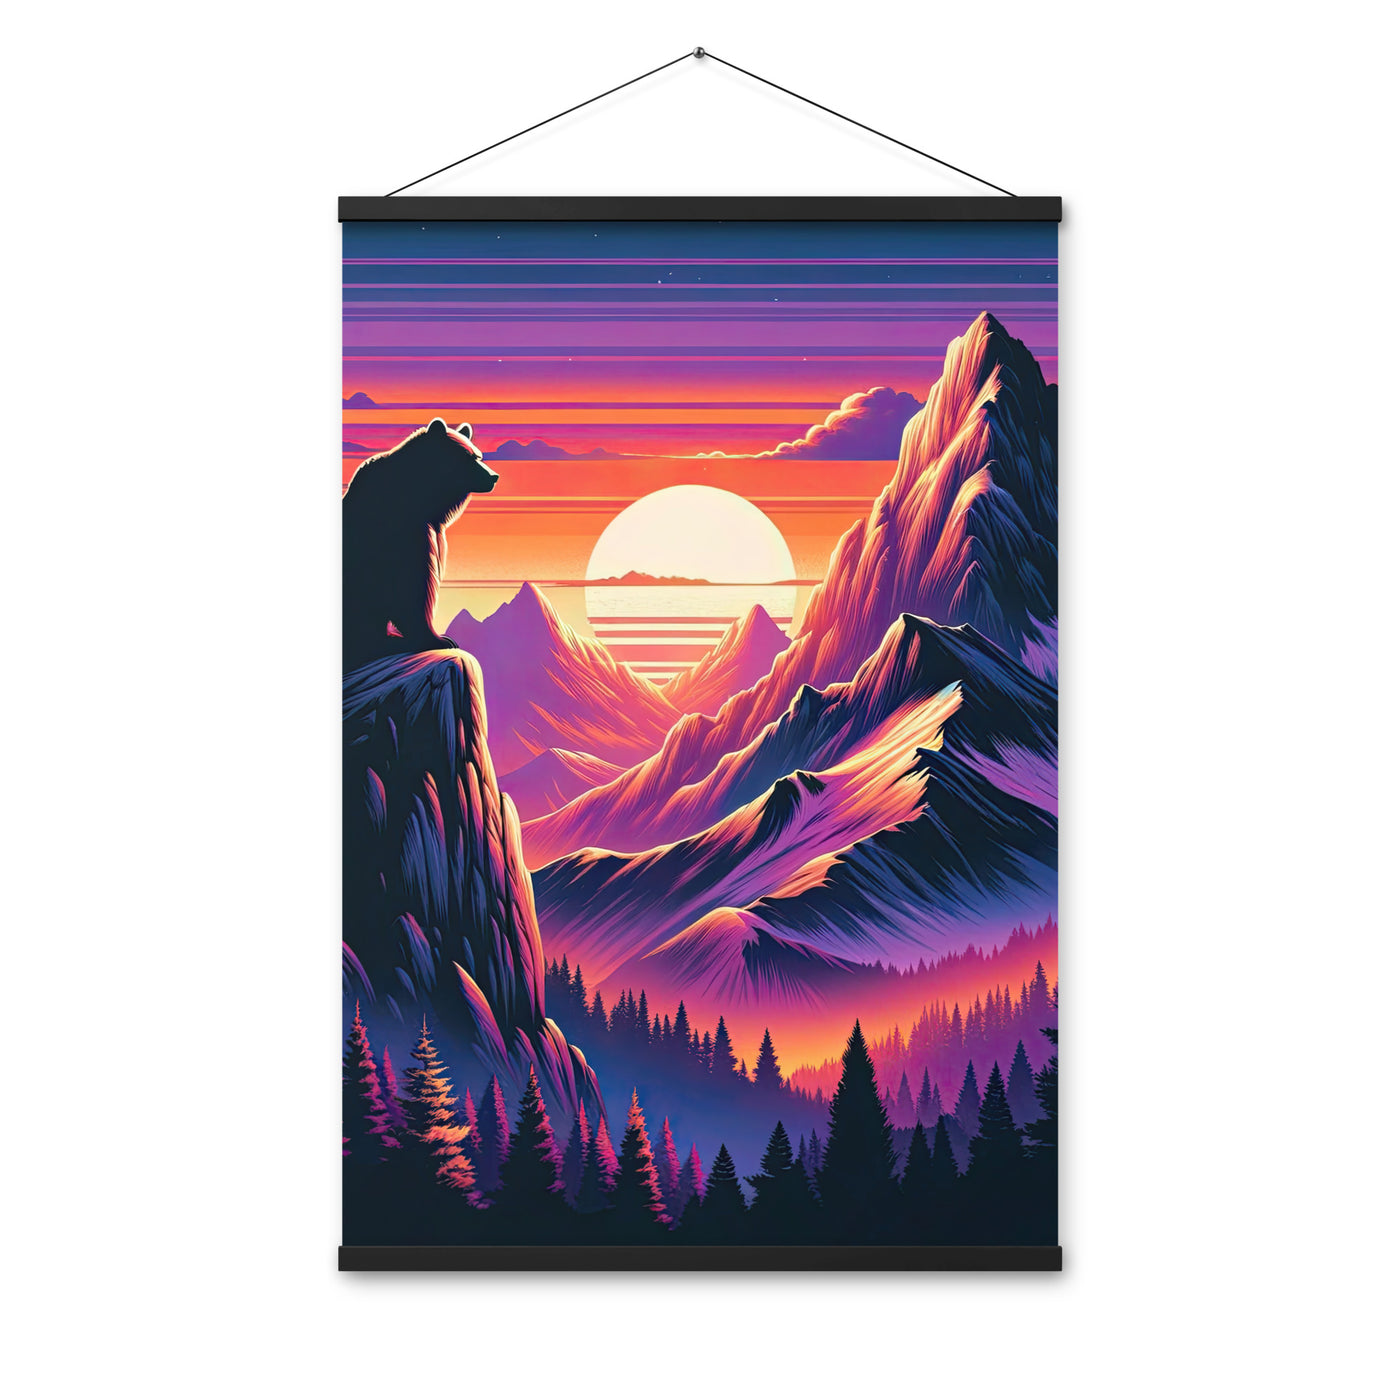 Alpen-Sonnenuntergang mit Bär auf Hügel, warmes Himmelsfarbenspiel - Premium Poster mit Aufhängung camping xxx yyy zzz 61 x 91.4 cm